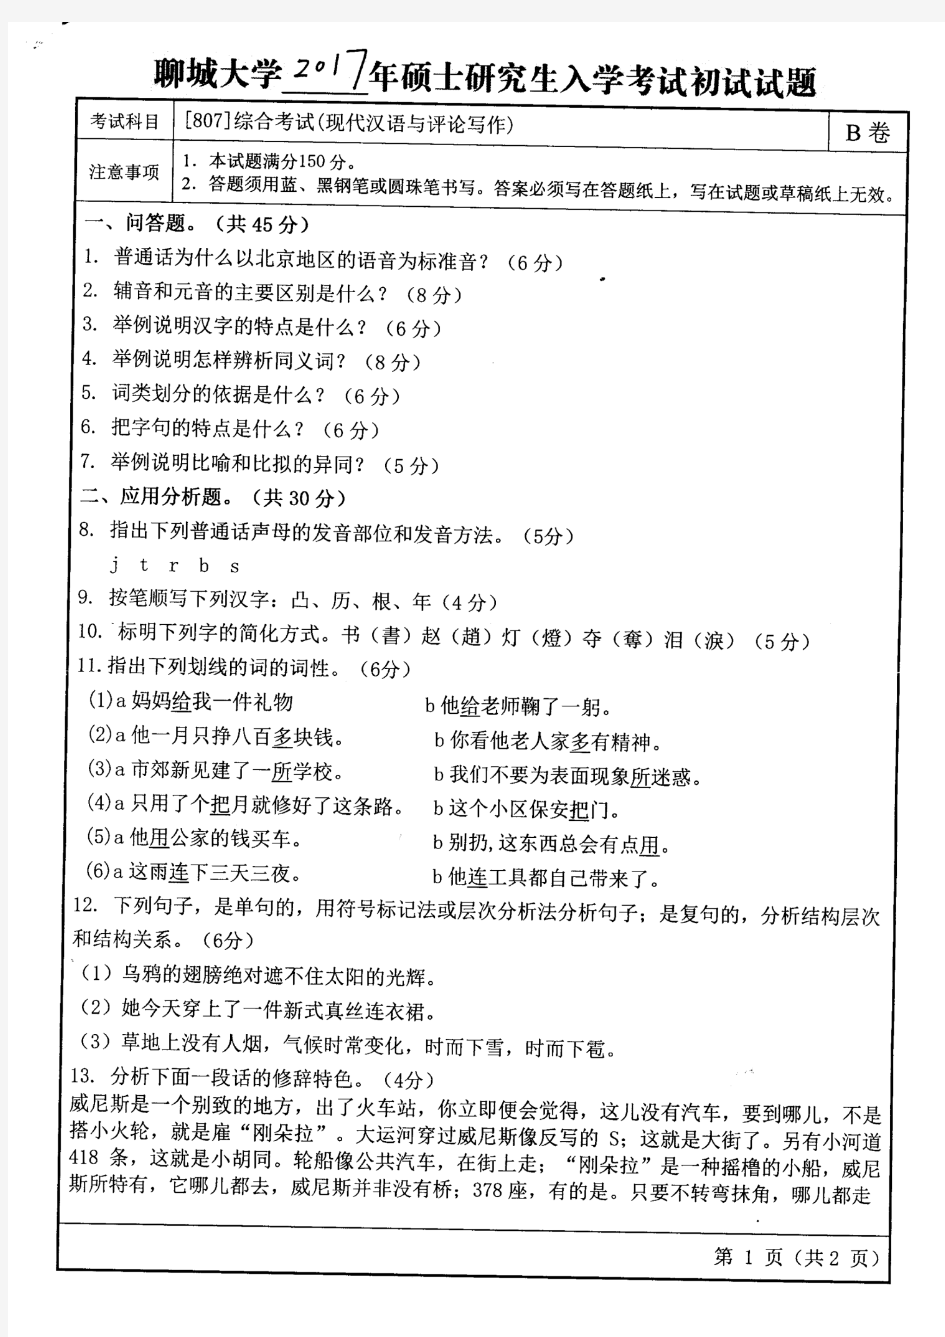 聊城大学2017年《807综合考试(现代汉语与评论写作)》考研专业课真题试卷